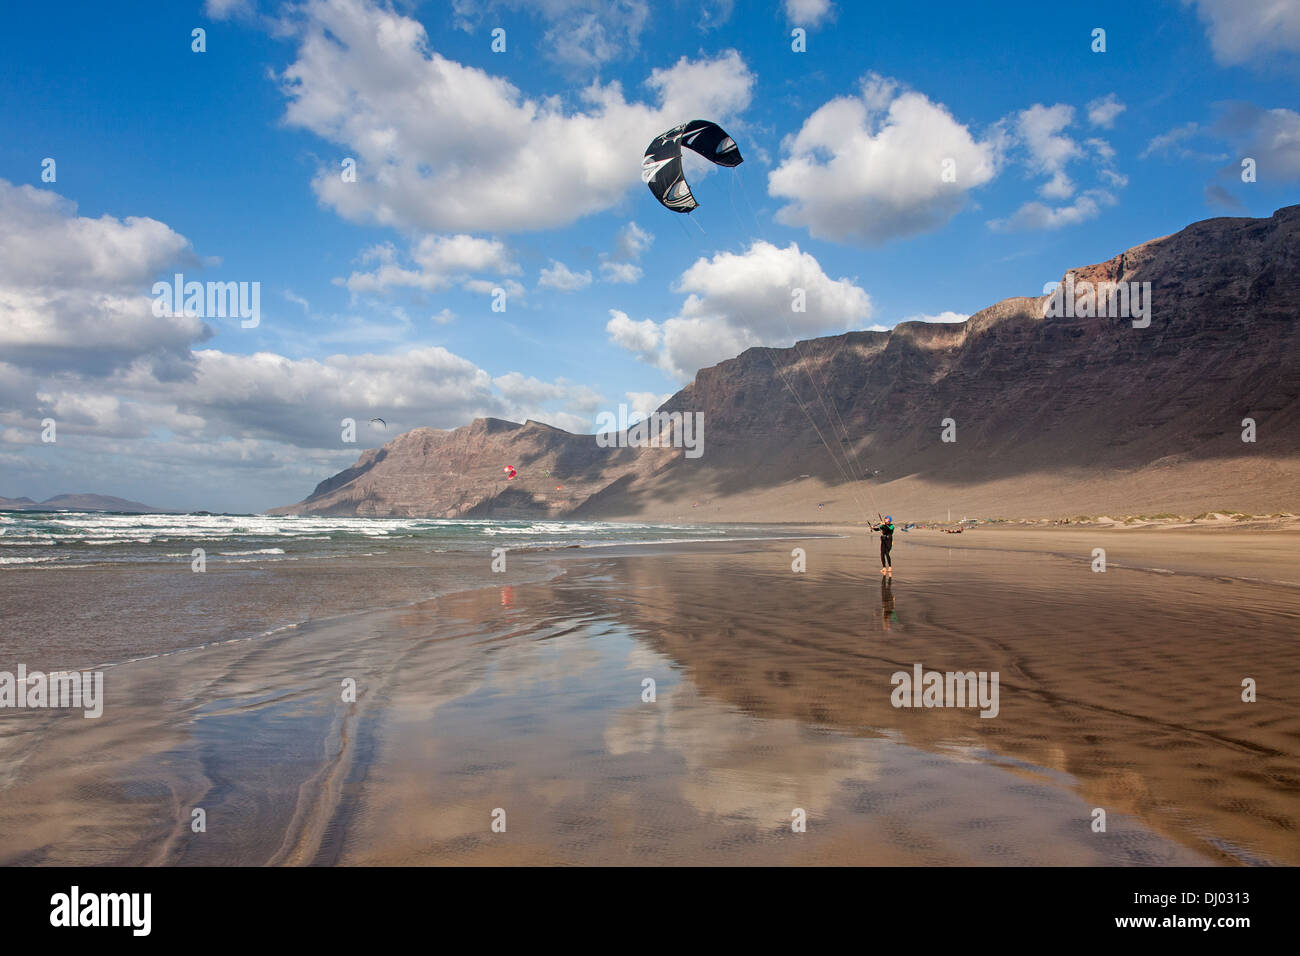 Mann-Kitesurfen auf windigen Famara Strand Risco de Famara im Hintergrund Stockfoto